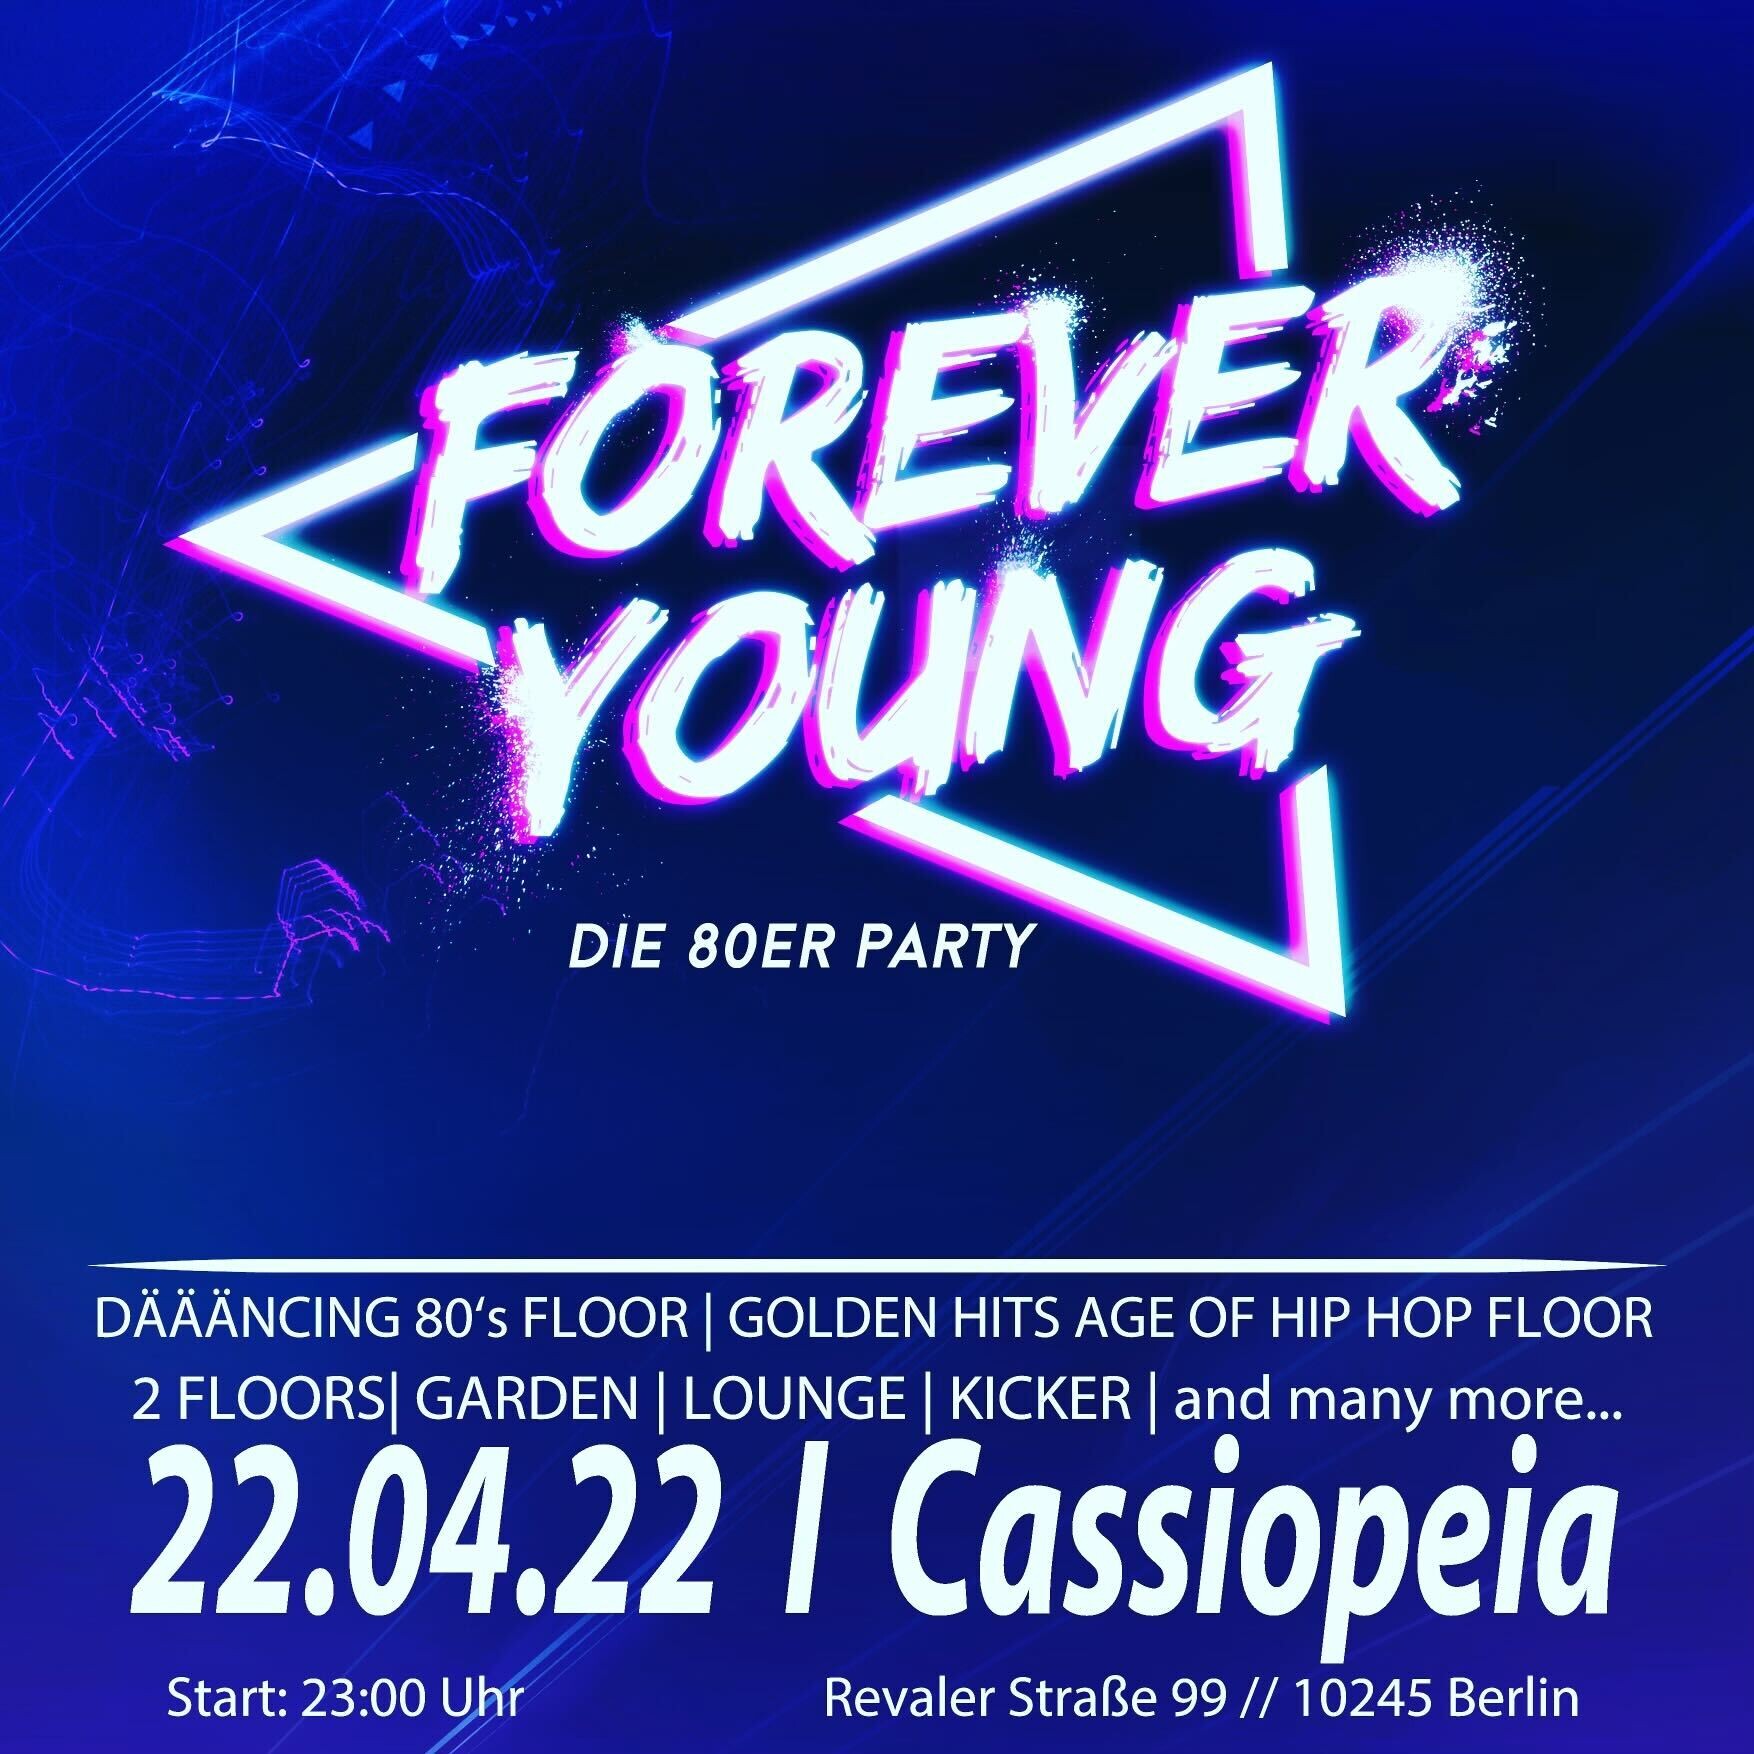 Cassiopeia Berlin Eventflyer #1 vom 22.04.2022